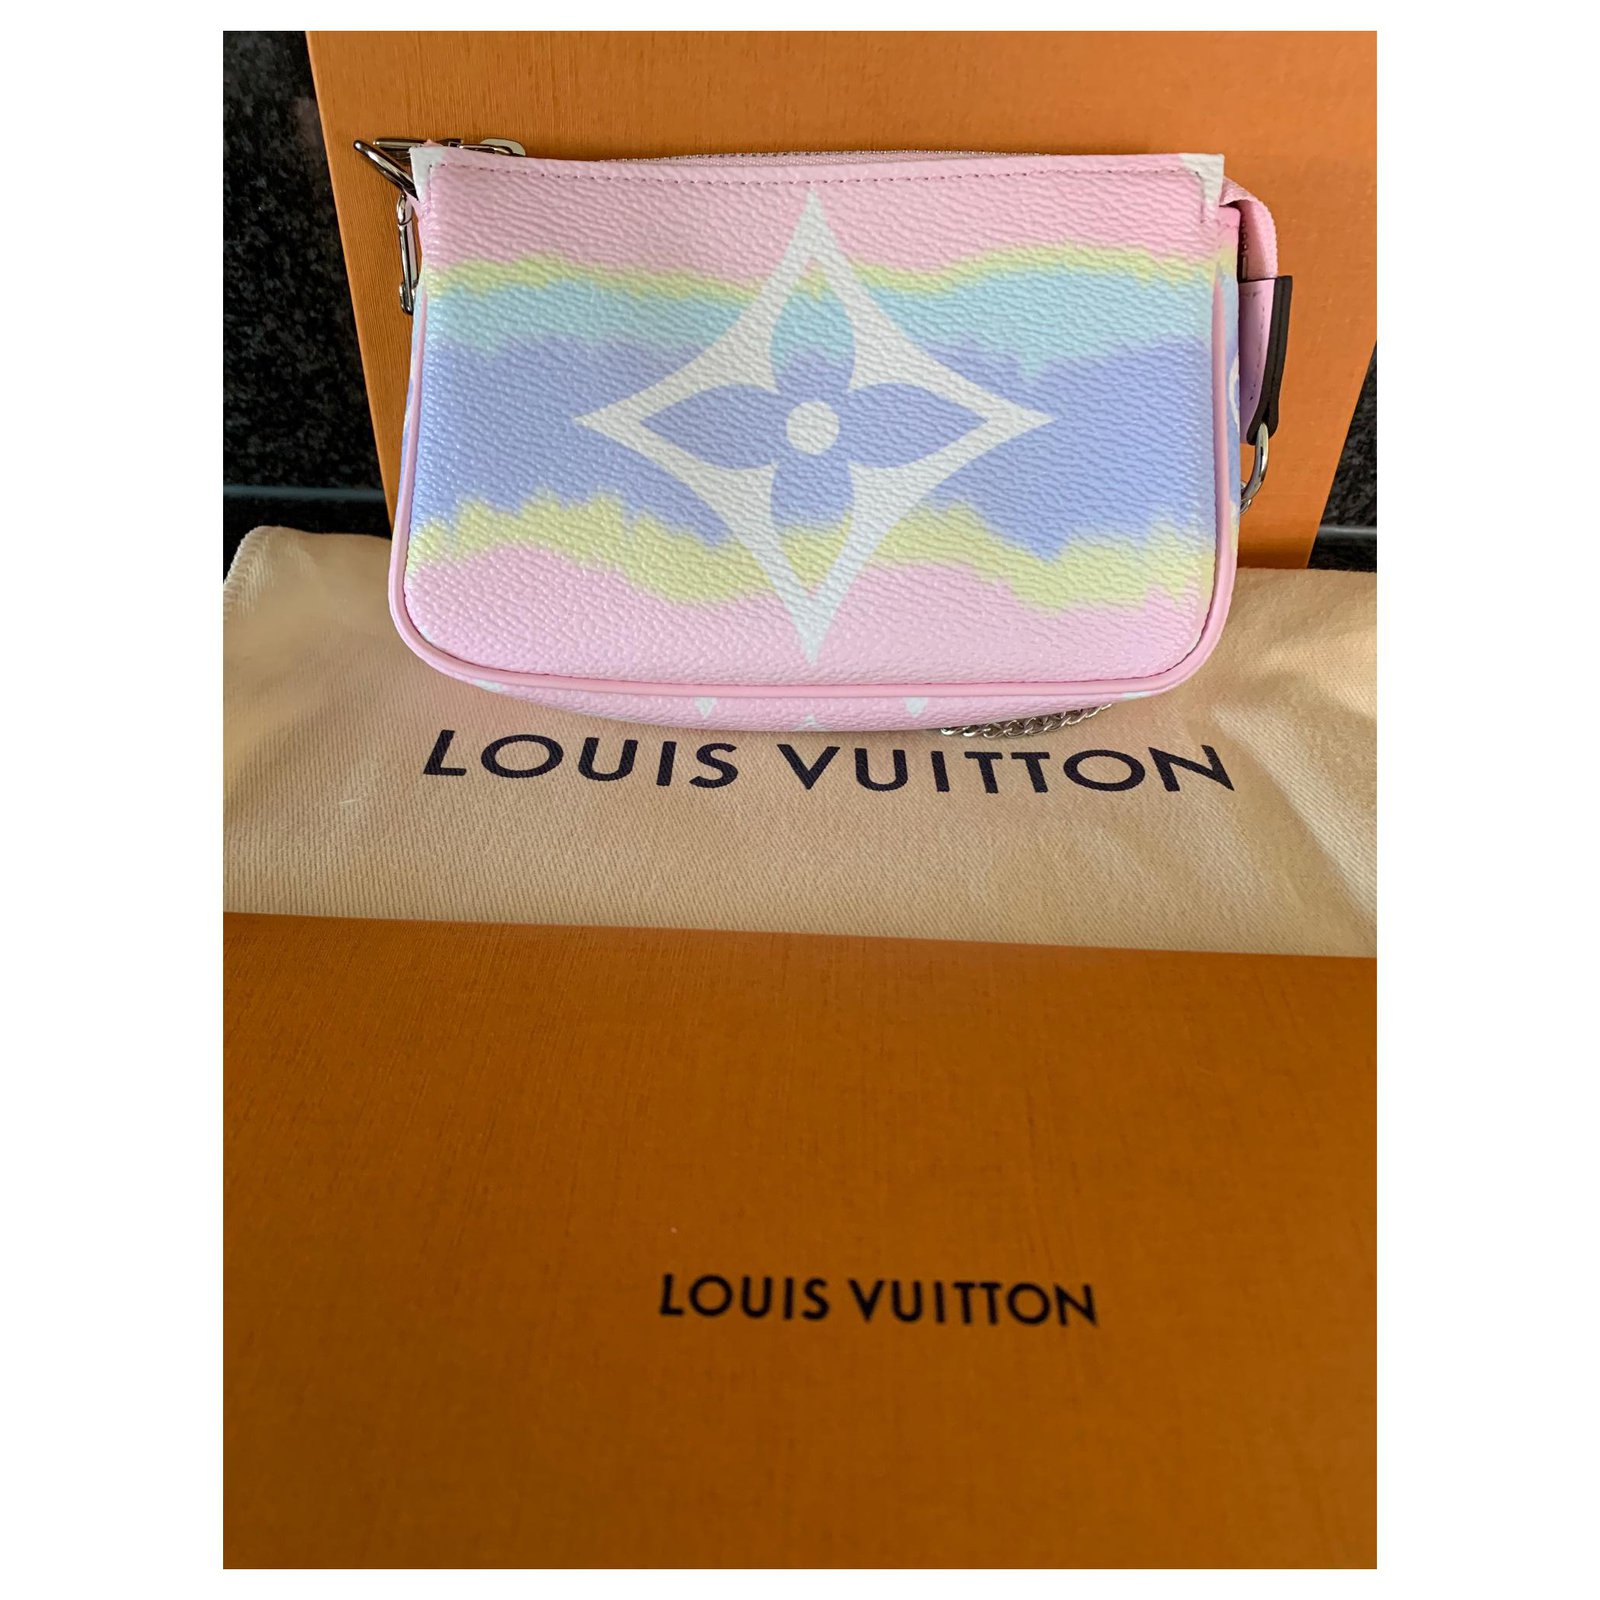 Louis Vuitton Escale Mini Pochette